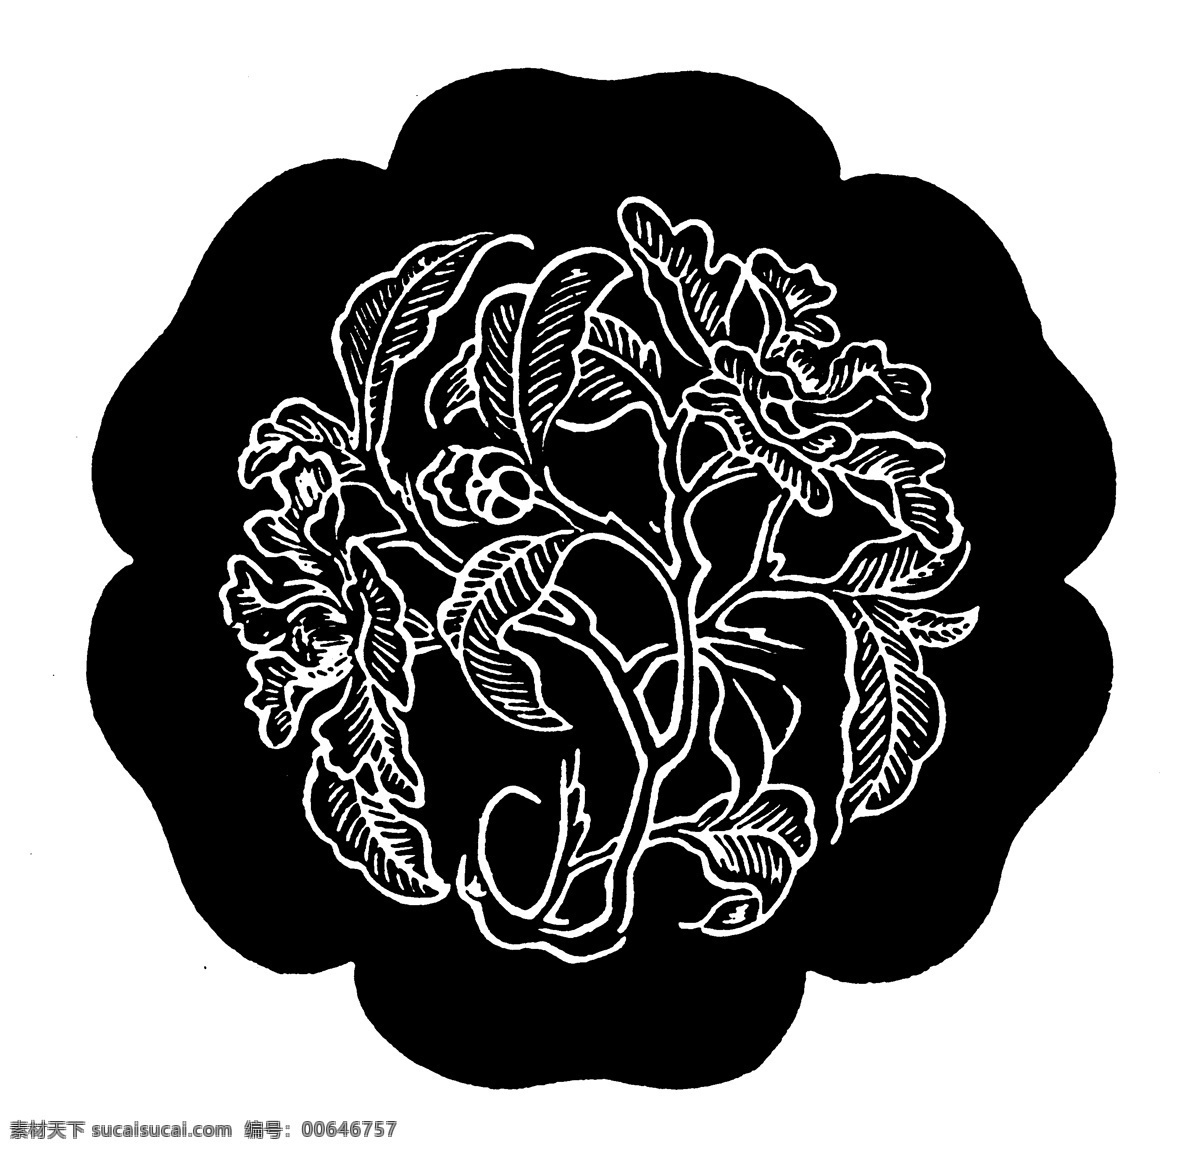 花鸟图案 元明时代图案 中国 传统 图案 240 设计素材 装饰图案 书画美术 黑色